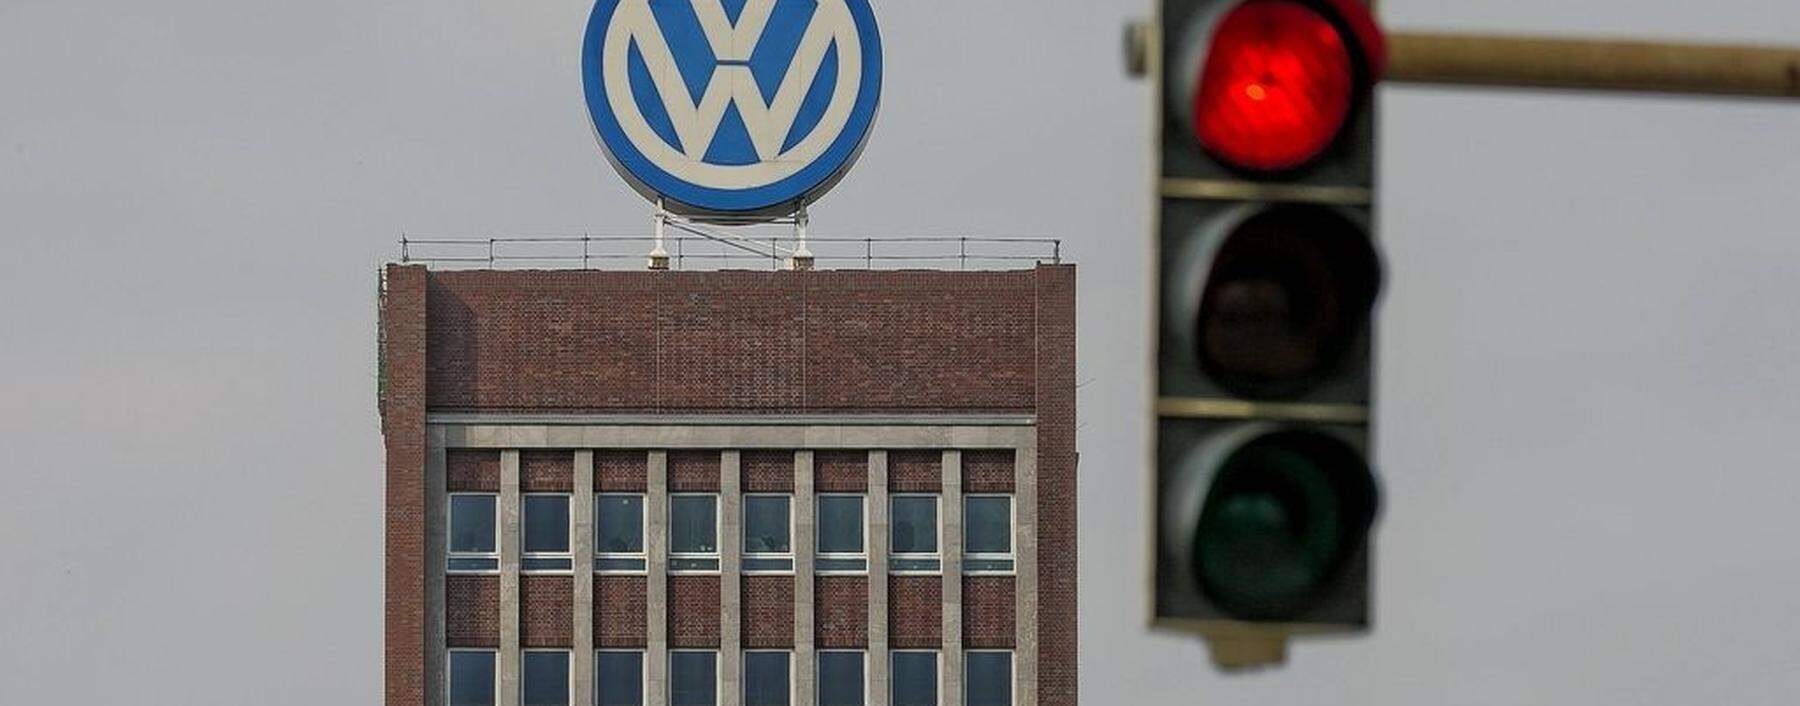 VW Emblem auf VW Verwaltungsgebaeude in Wolfsburg mit Roter Ampel gesehen am 09 04 2016